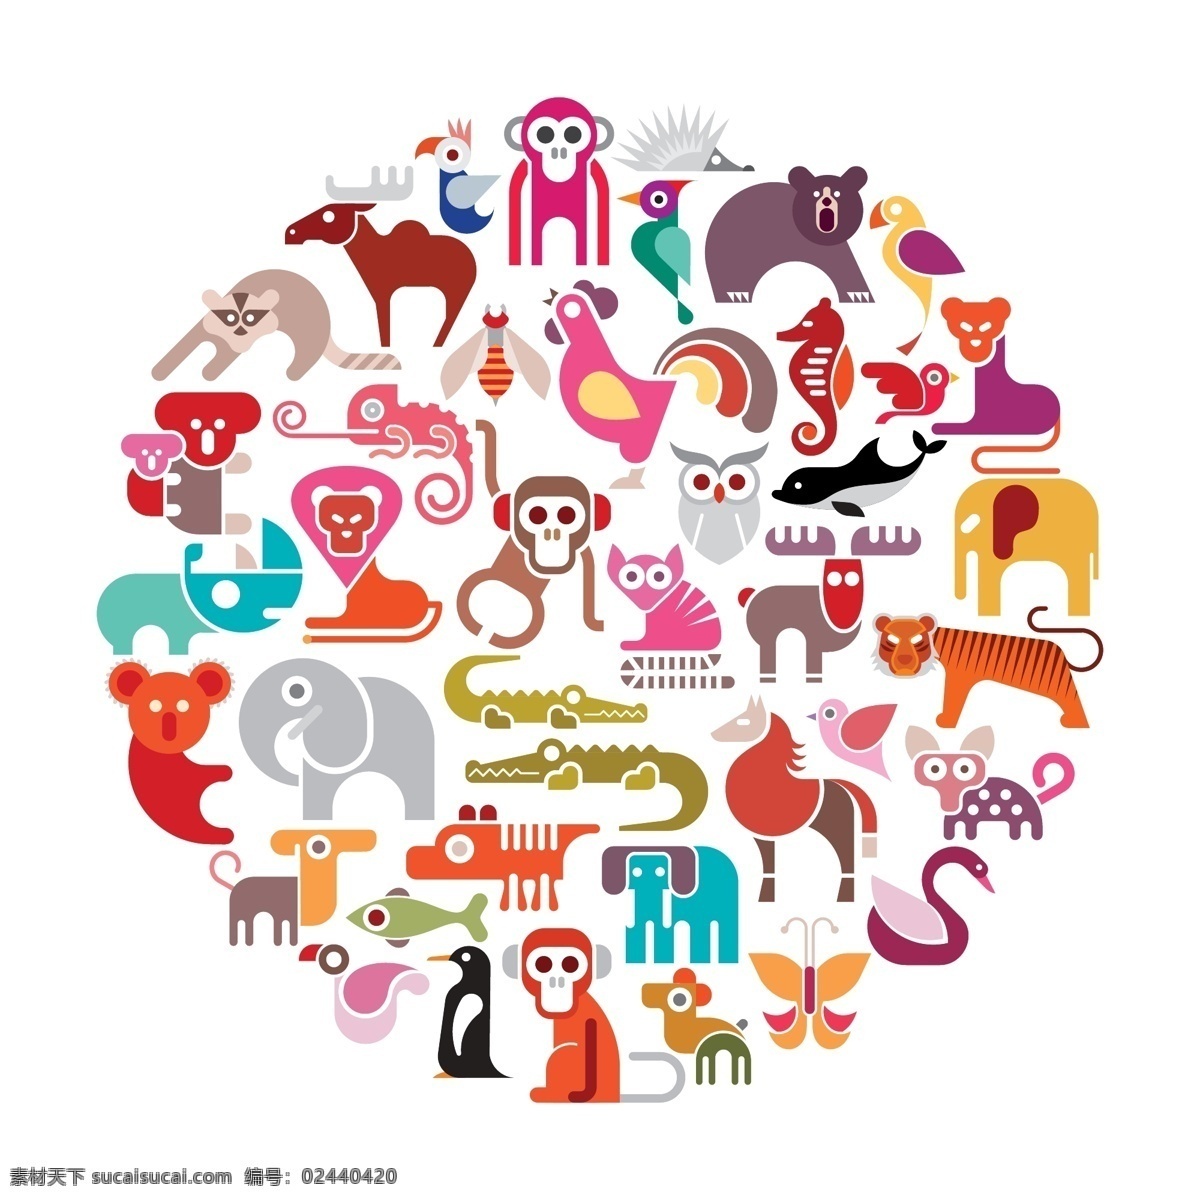 动物园 扁平 彩色 动物 图标 集 模版 插画 大象 海豚 猴子 卡通 老虎 马 猫头鹰 企鹅 狮子